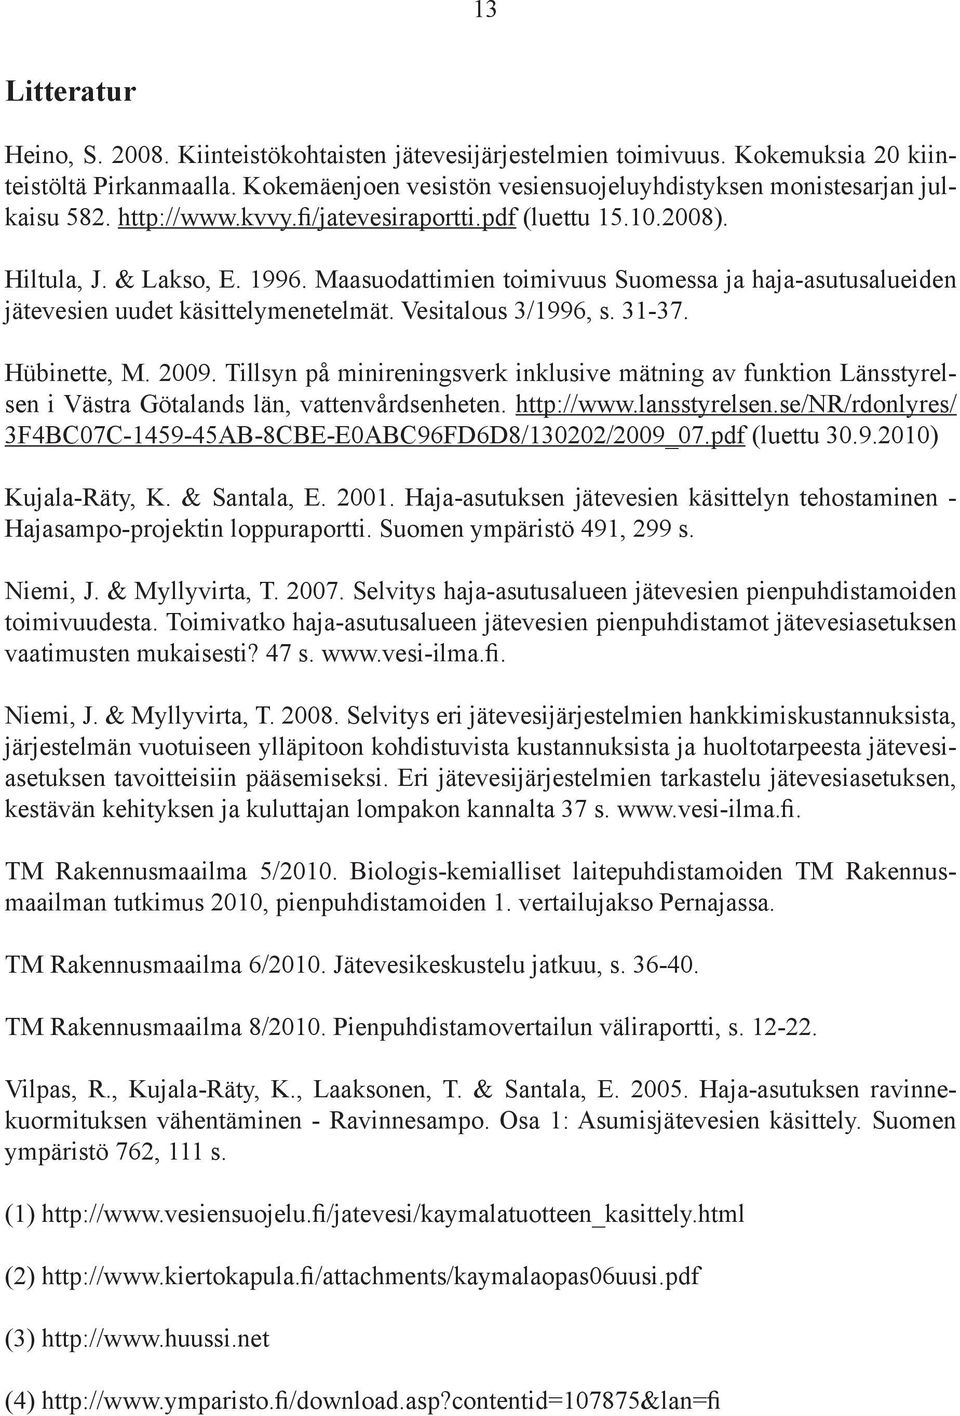 Vesitalous 3/1996, s. 31-37. Hübinette, M. 2009. Tillsyn på minireningsverk inklusive mätning av funktion Länsstyrelsen i Västra Götalands län, vattenvårdsenheten. http://www.lansstyrelsen.